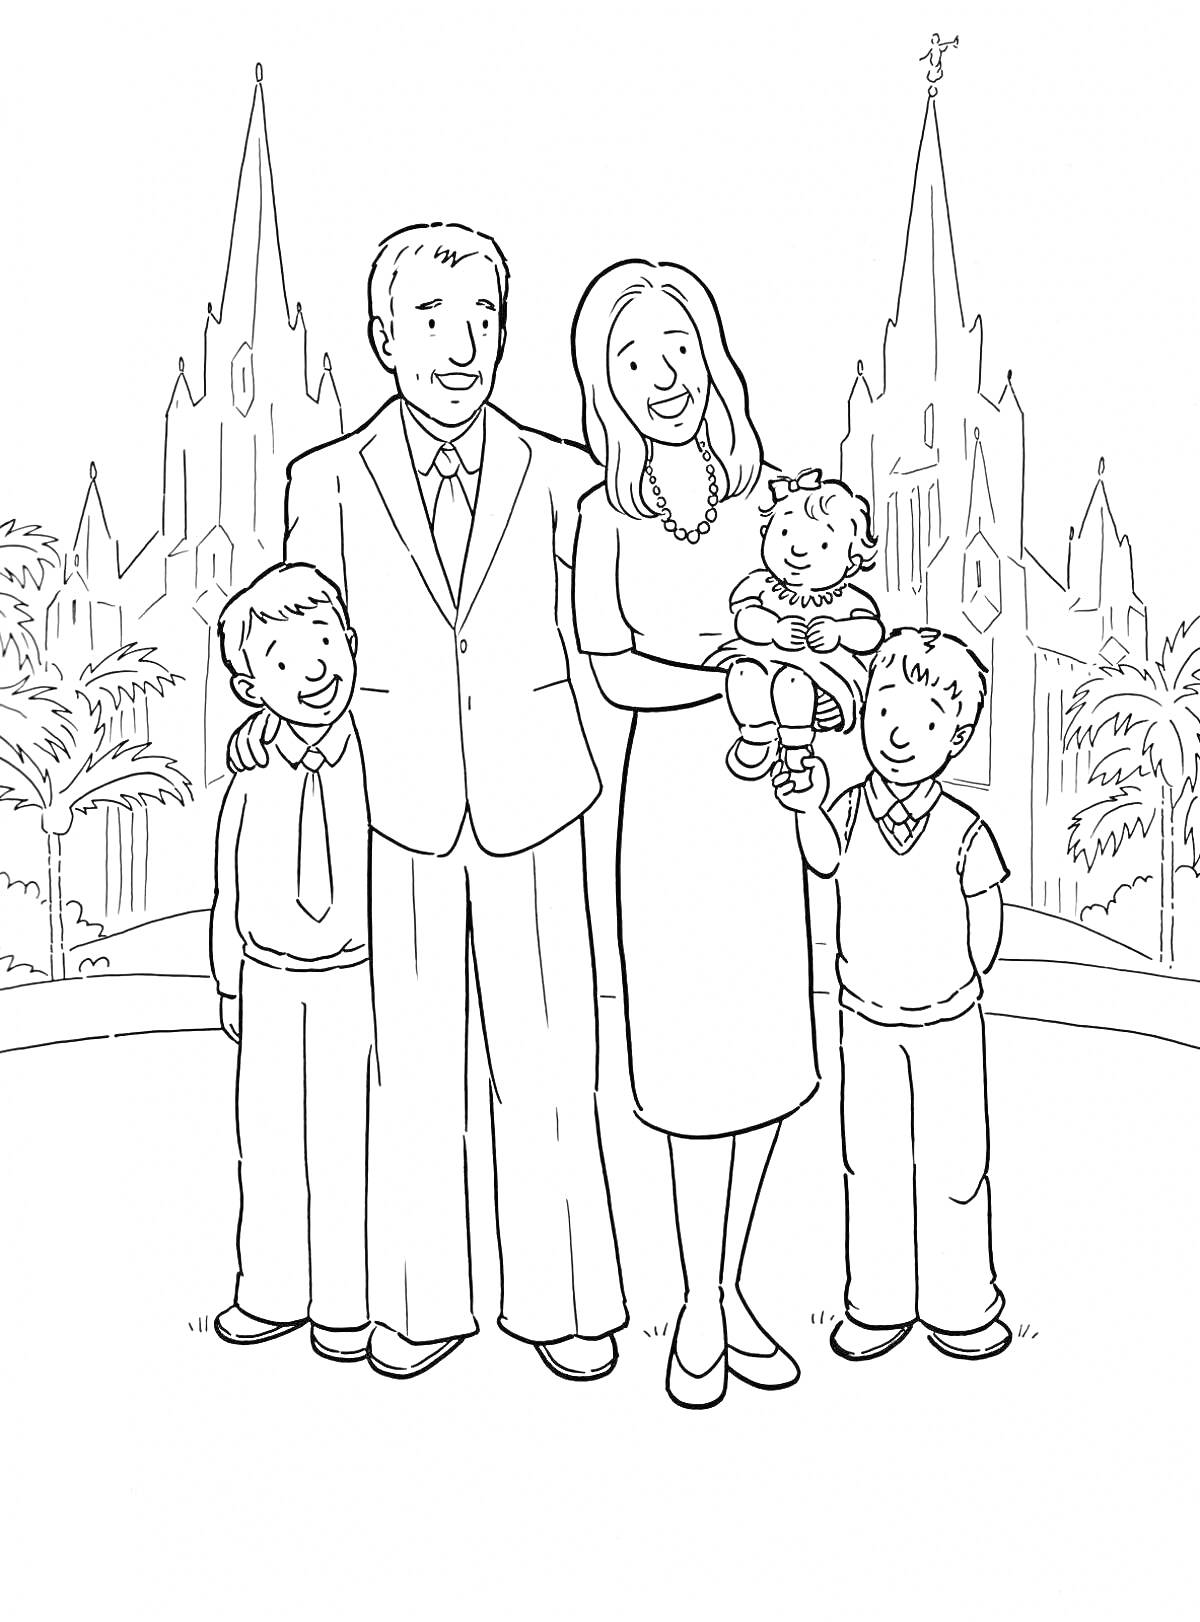 Раскраска Семья из пяти человек на фоне собора. Отец, мать, трое детей, пальмы, собор на заднем плане